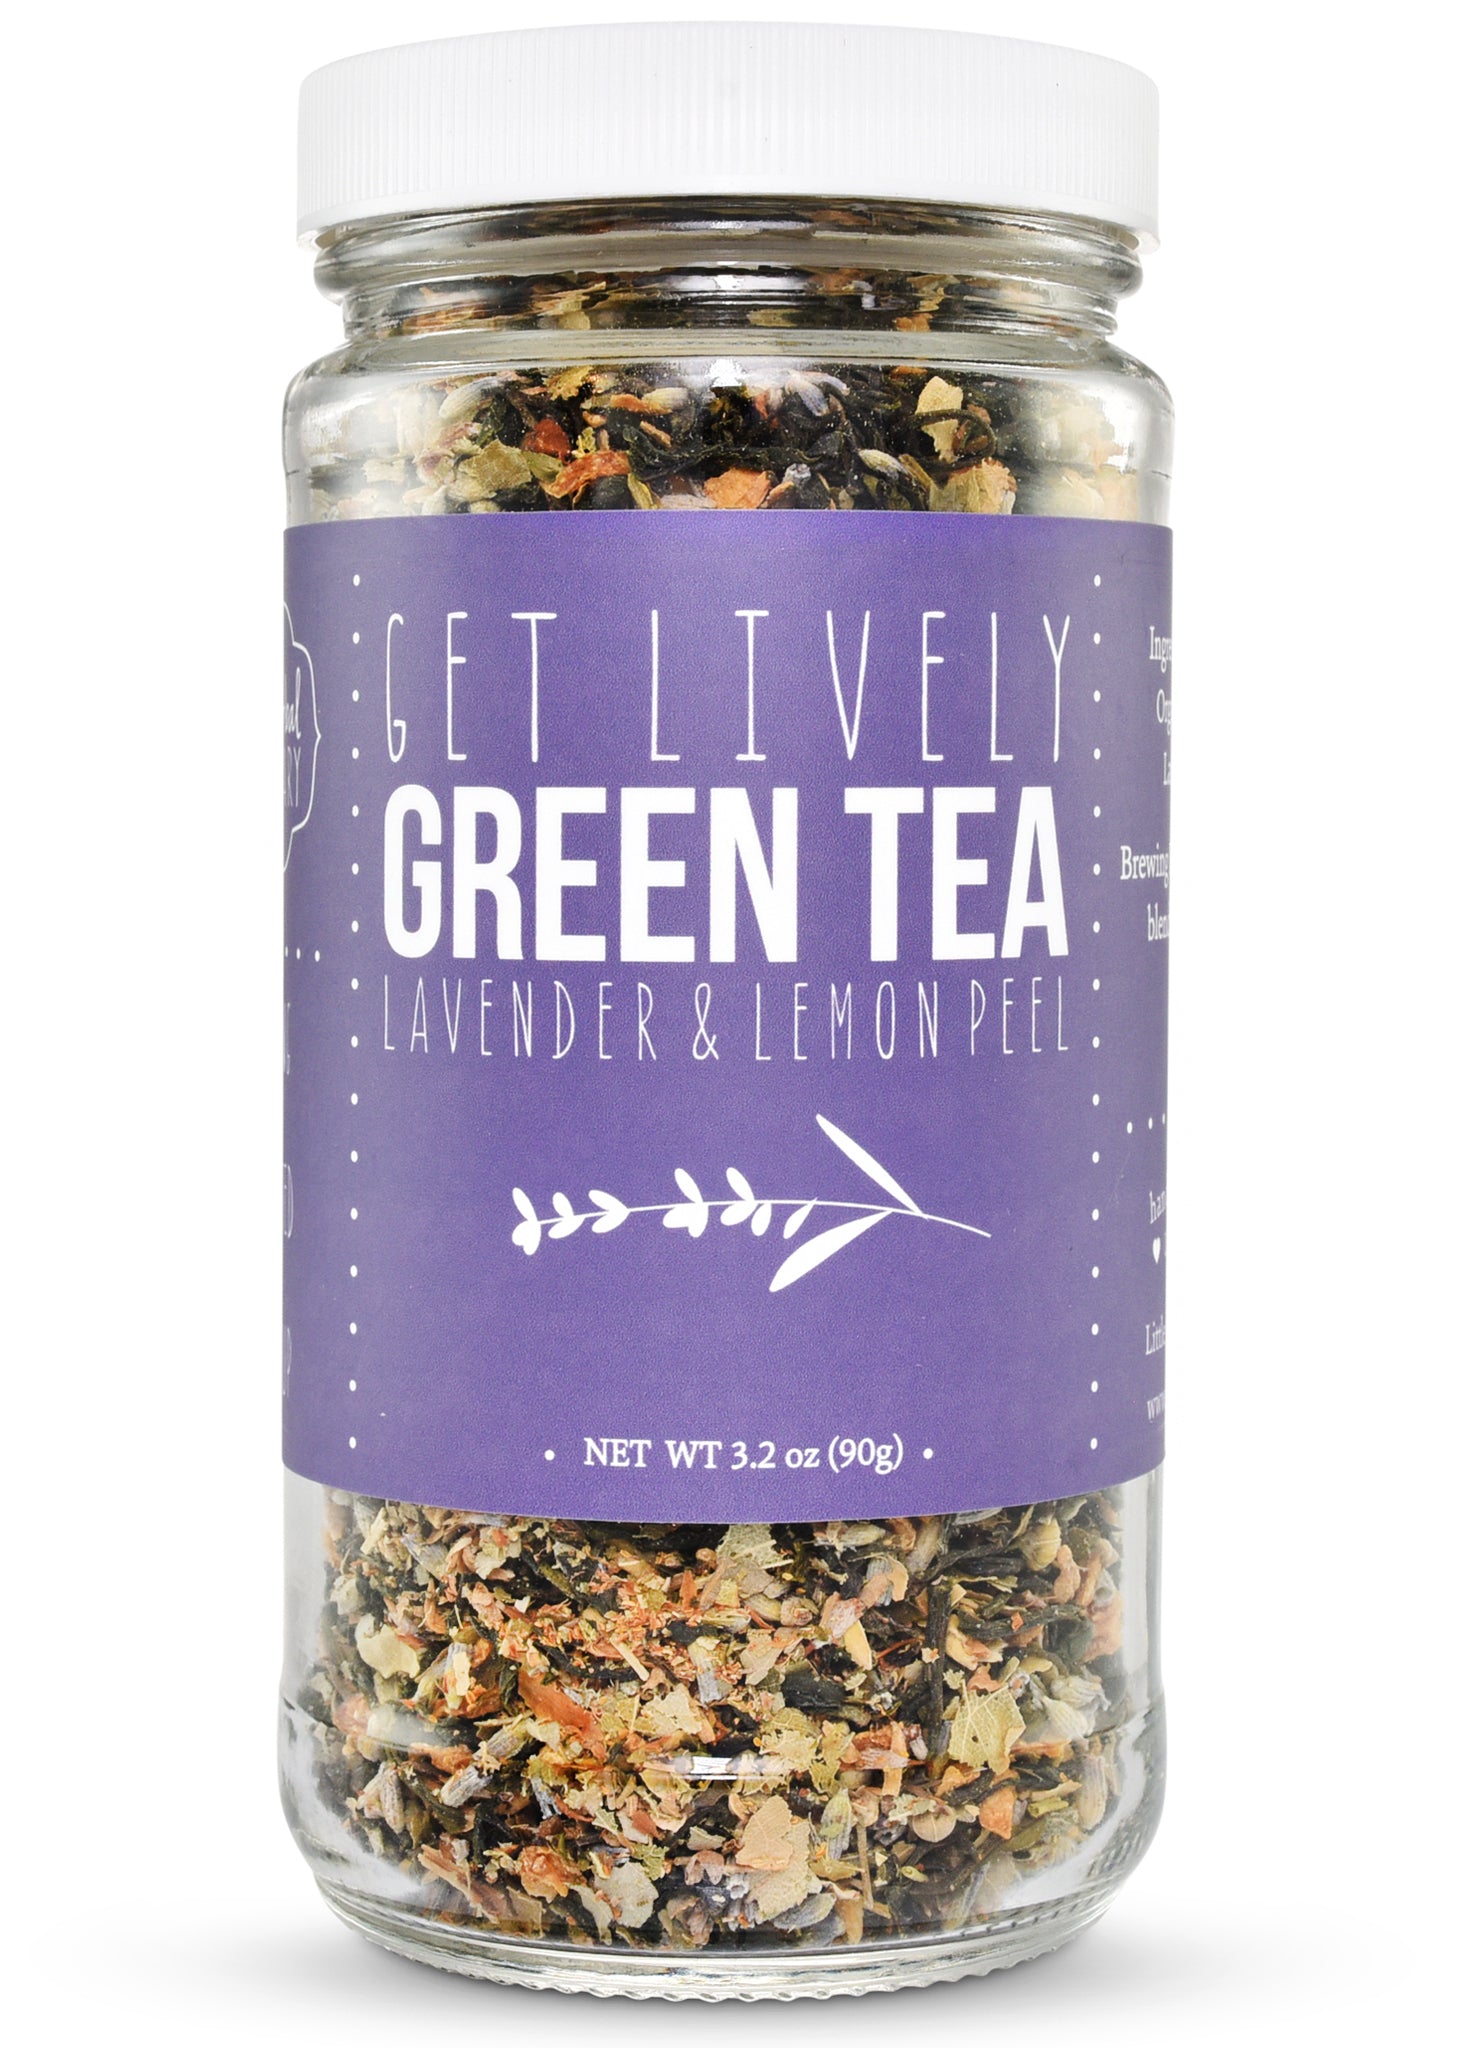 Get Lively Green Tea Blend